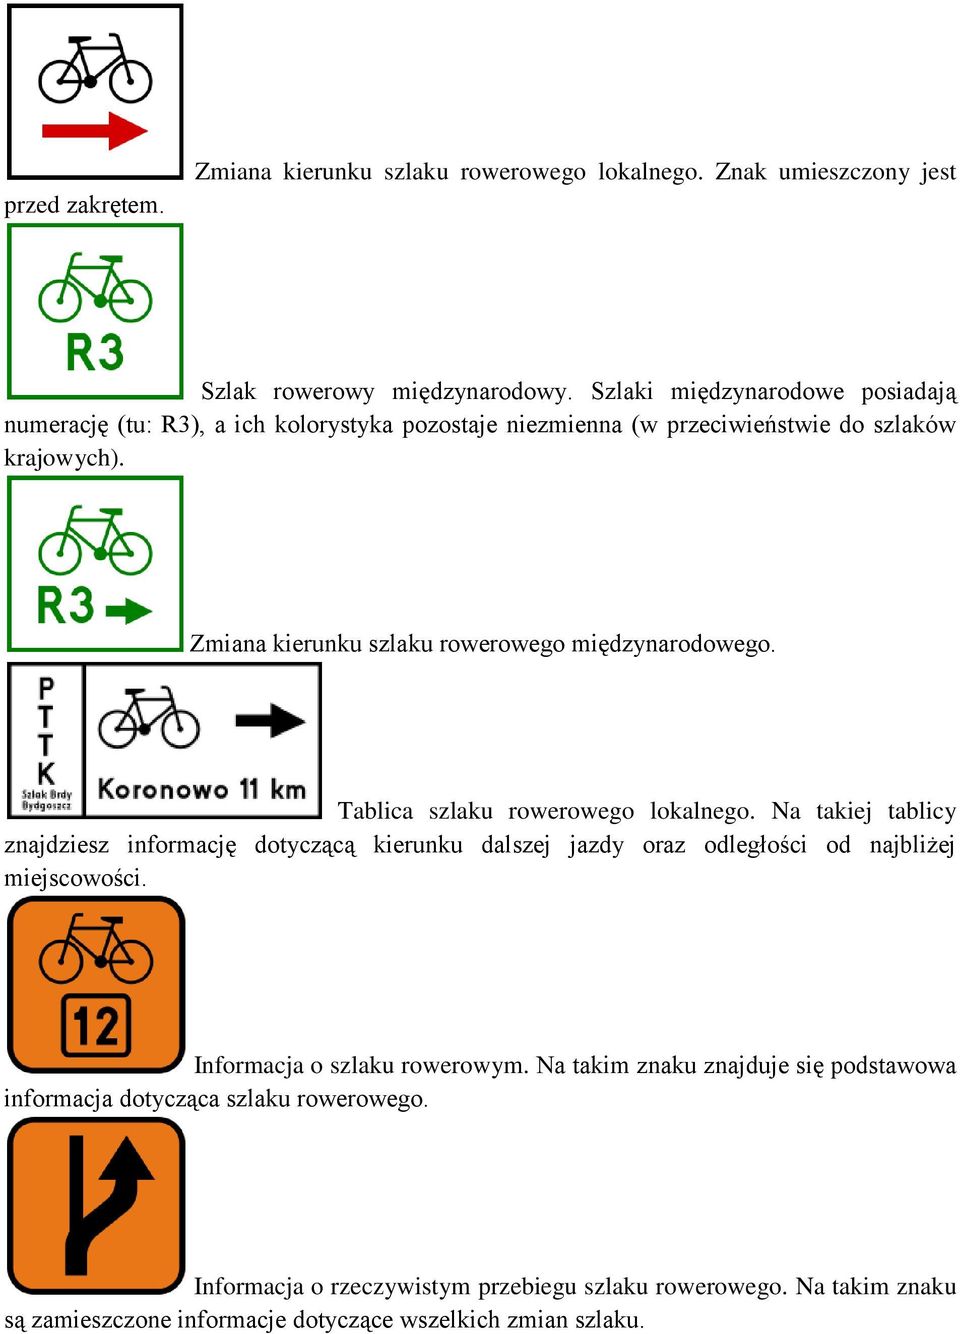 Zmiana kierunku szlaku rowerowego międzynarodowego. Tablica szlaku rowerowego lokalnego.